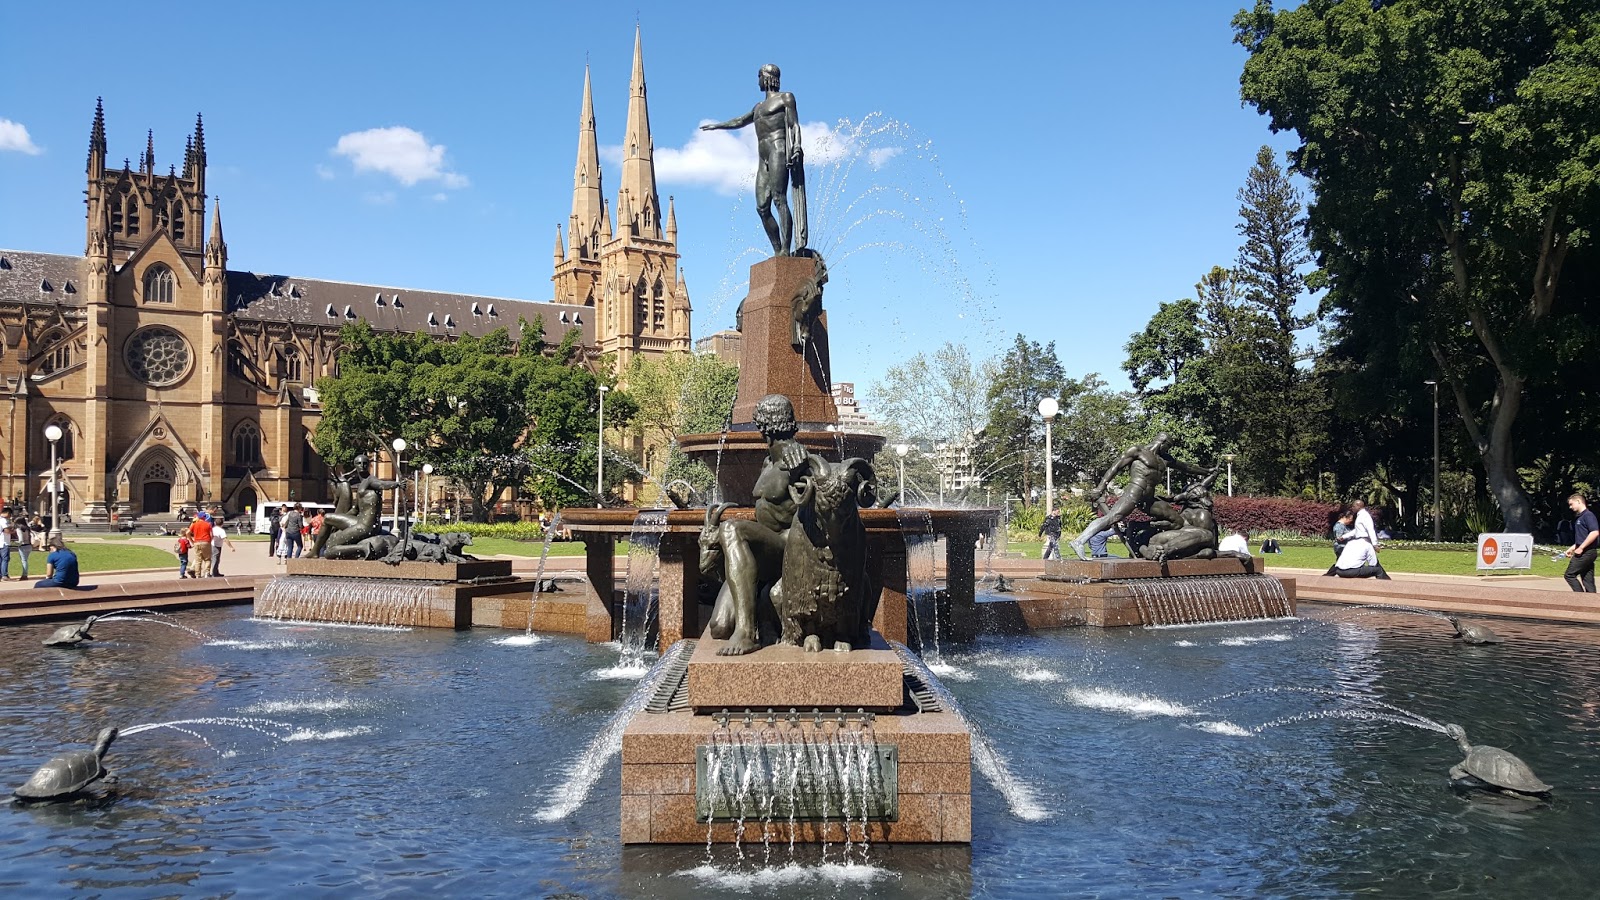 The Archibald Fountain at Sydney